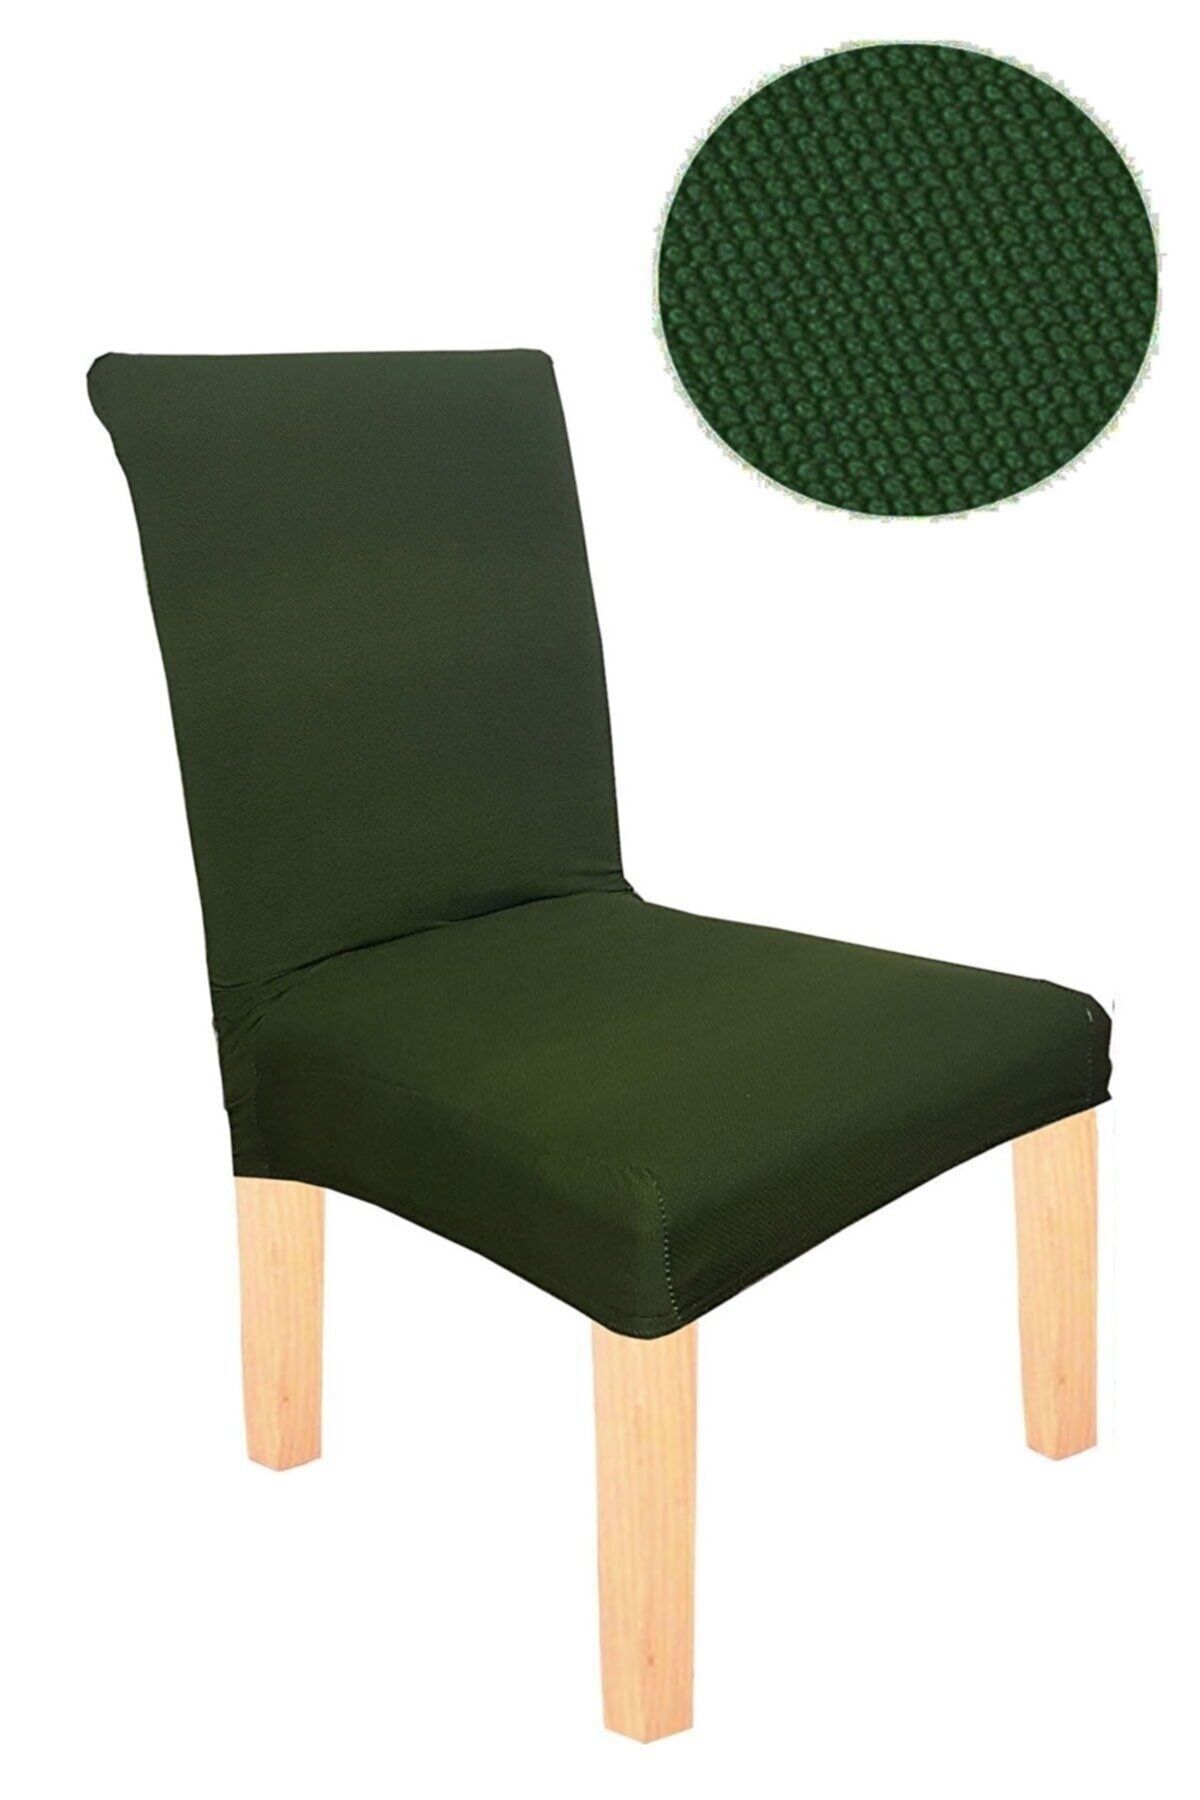 elgeyar Balpeteği Likra Kumaşlı Sandalye Örtüsü Lastikli Sandalye Kılıfı 1 Adet Yeşil Rengi